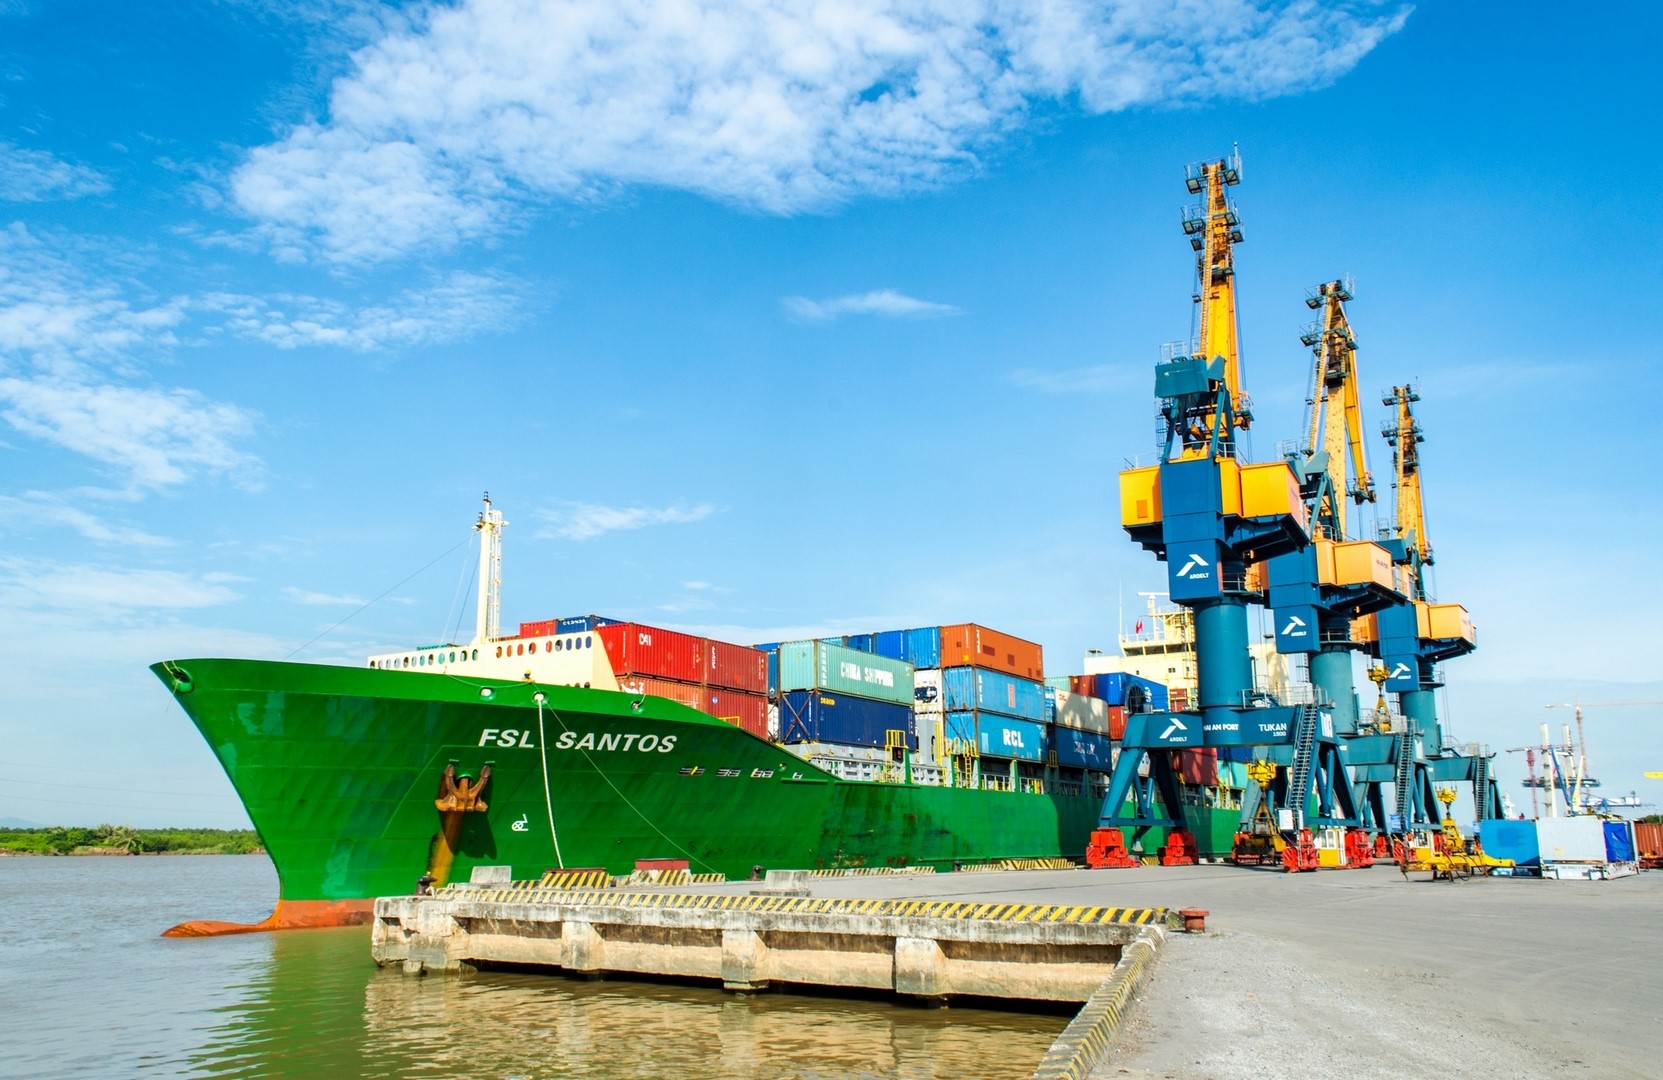 Công ty sở hữu đội tàu container lớn nhất Việt Nam lên kế hoạch lợi nhuận đi lùi năm thứ 2 liên tiếp, trả cổ tức tỷ lệ 20%- Ảnh 1.